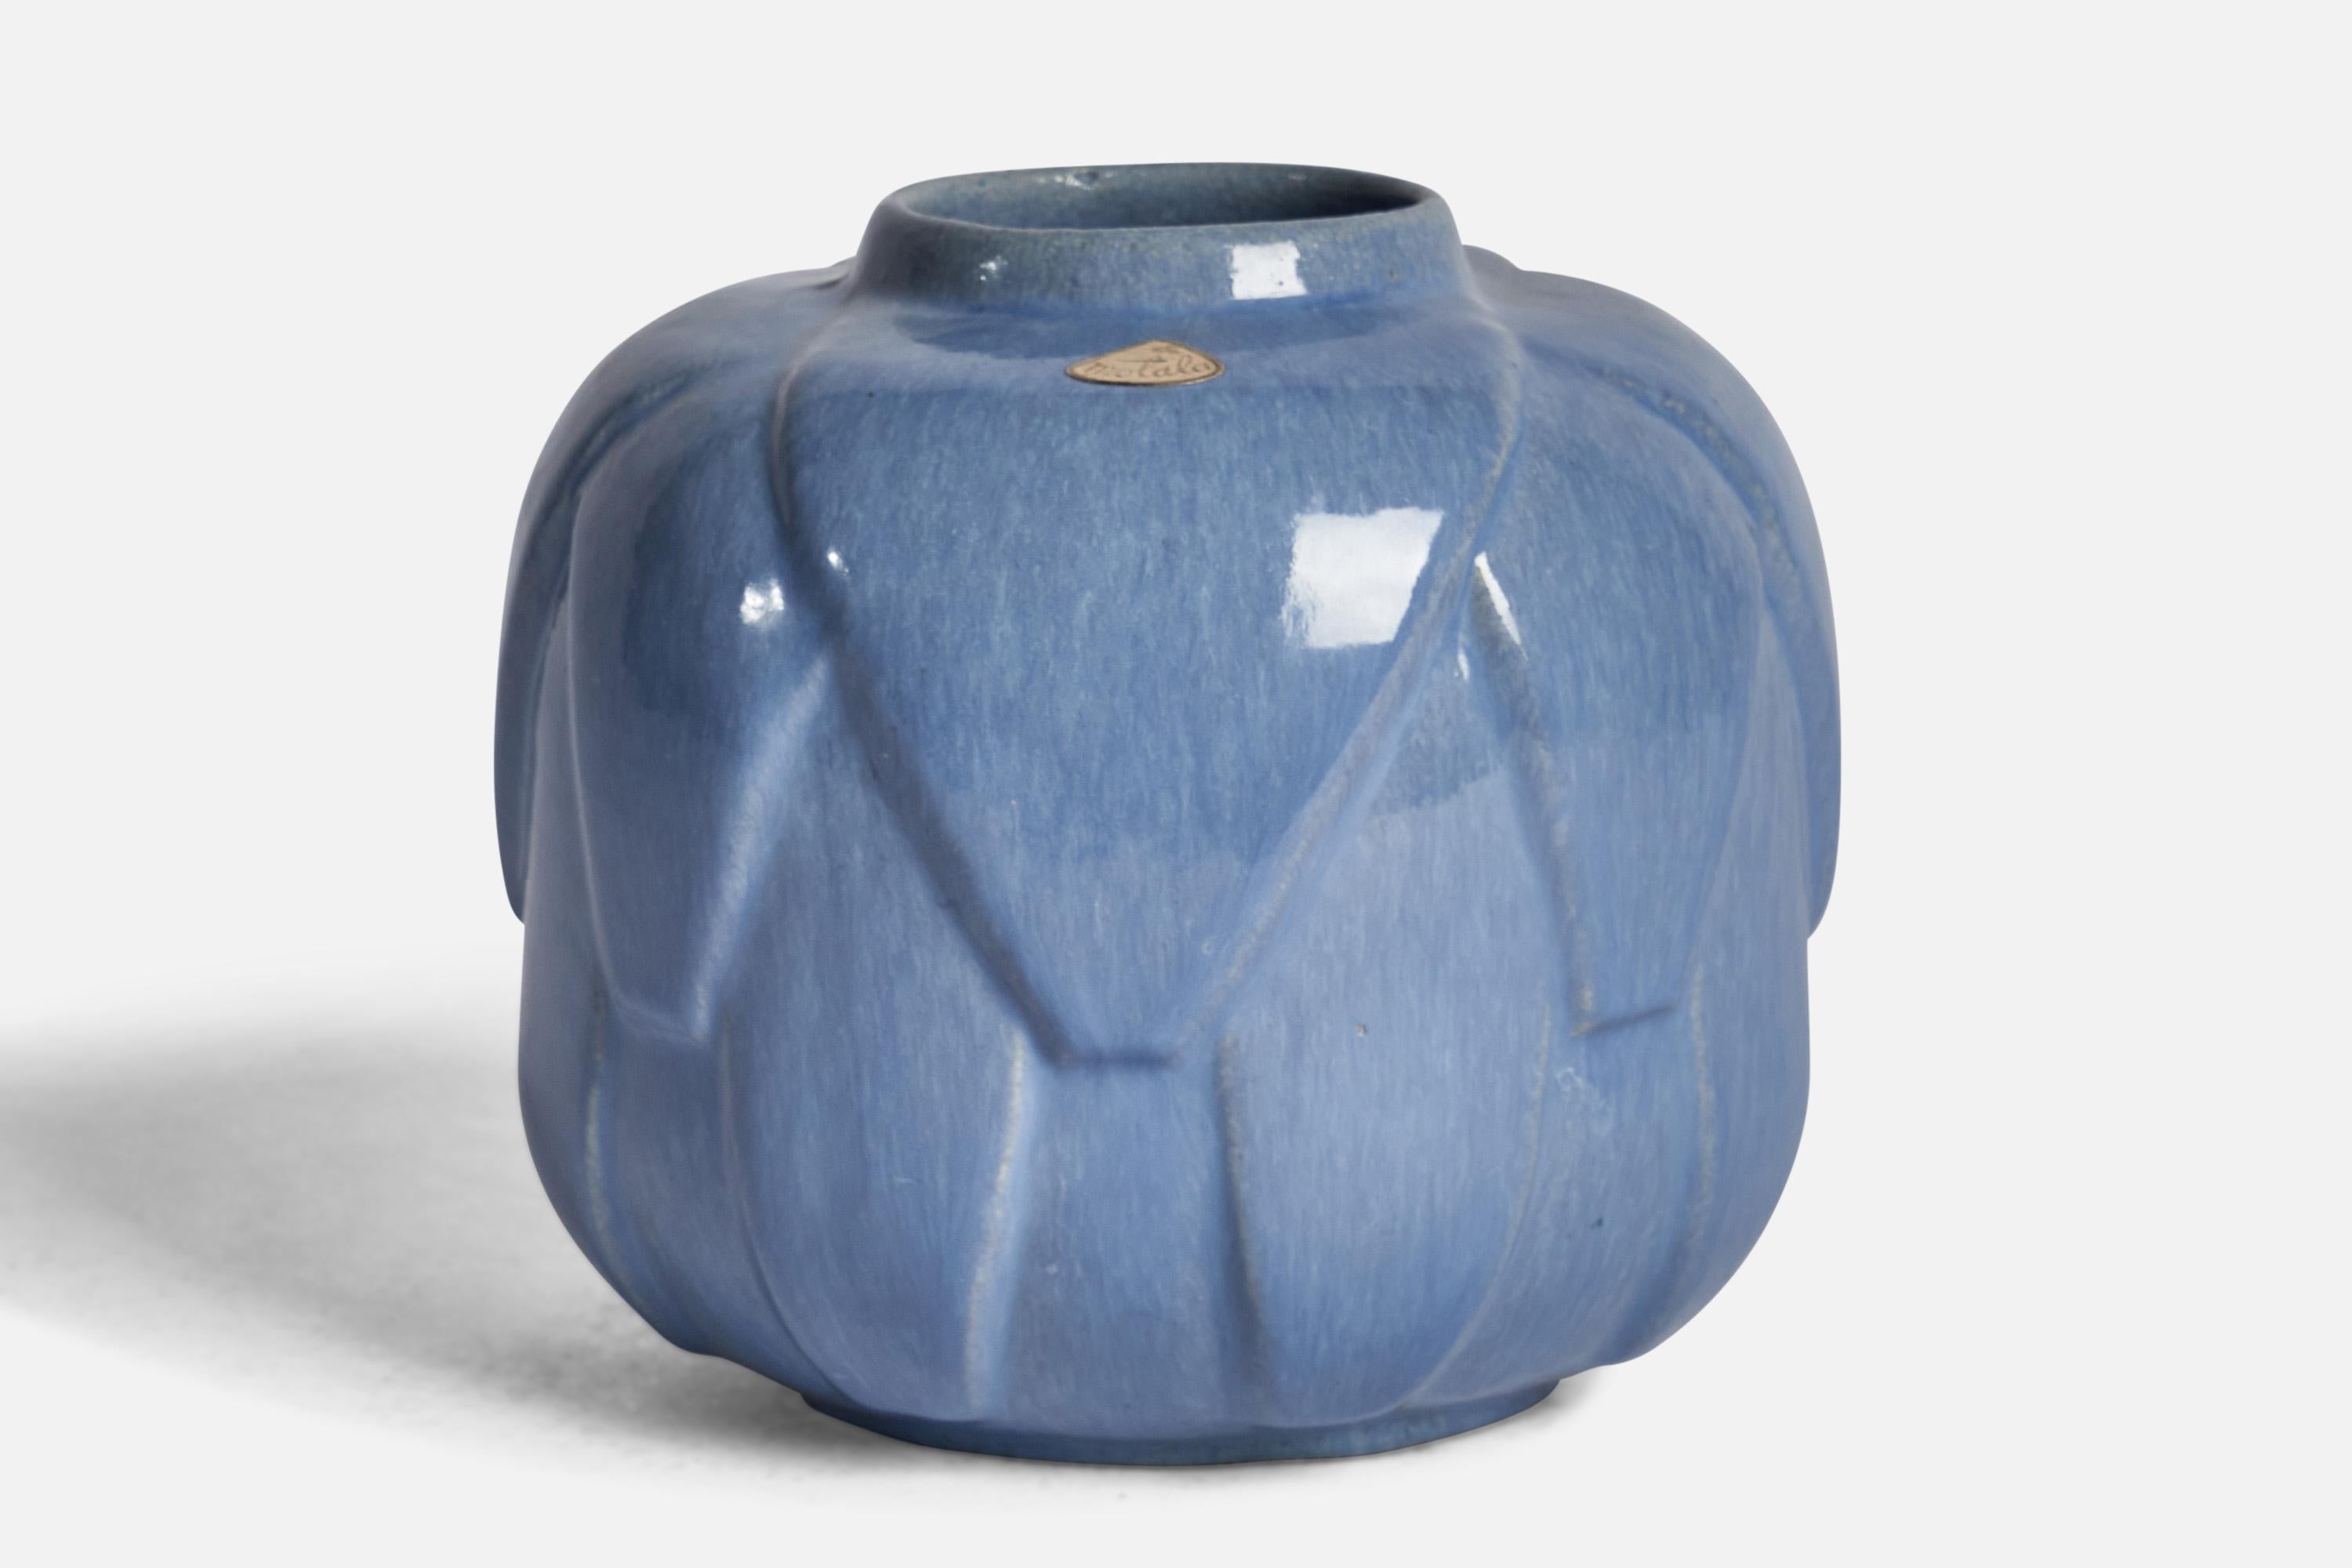 A blue-glazed ceramic vase designed and produced by Motala Keramik, Sweden, 1930s